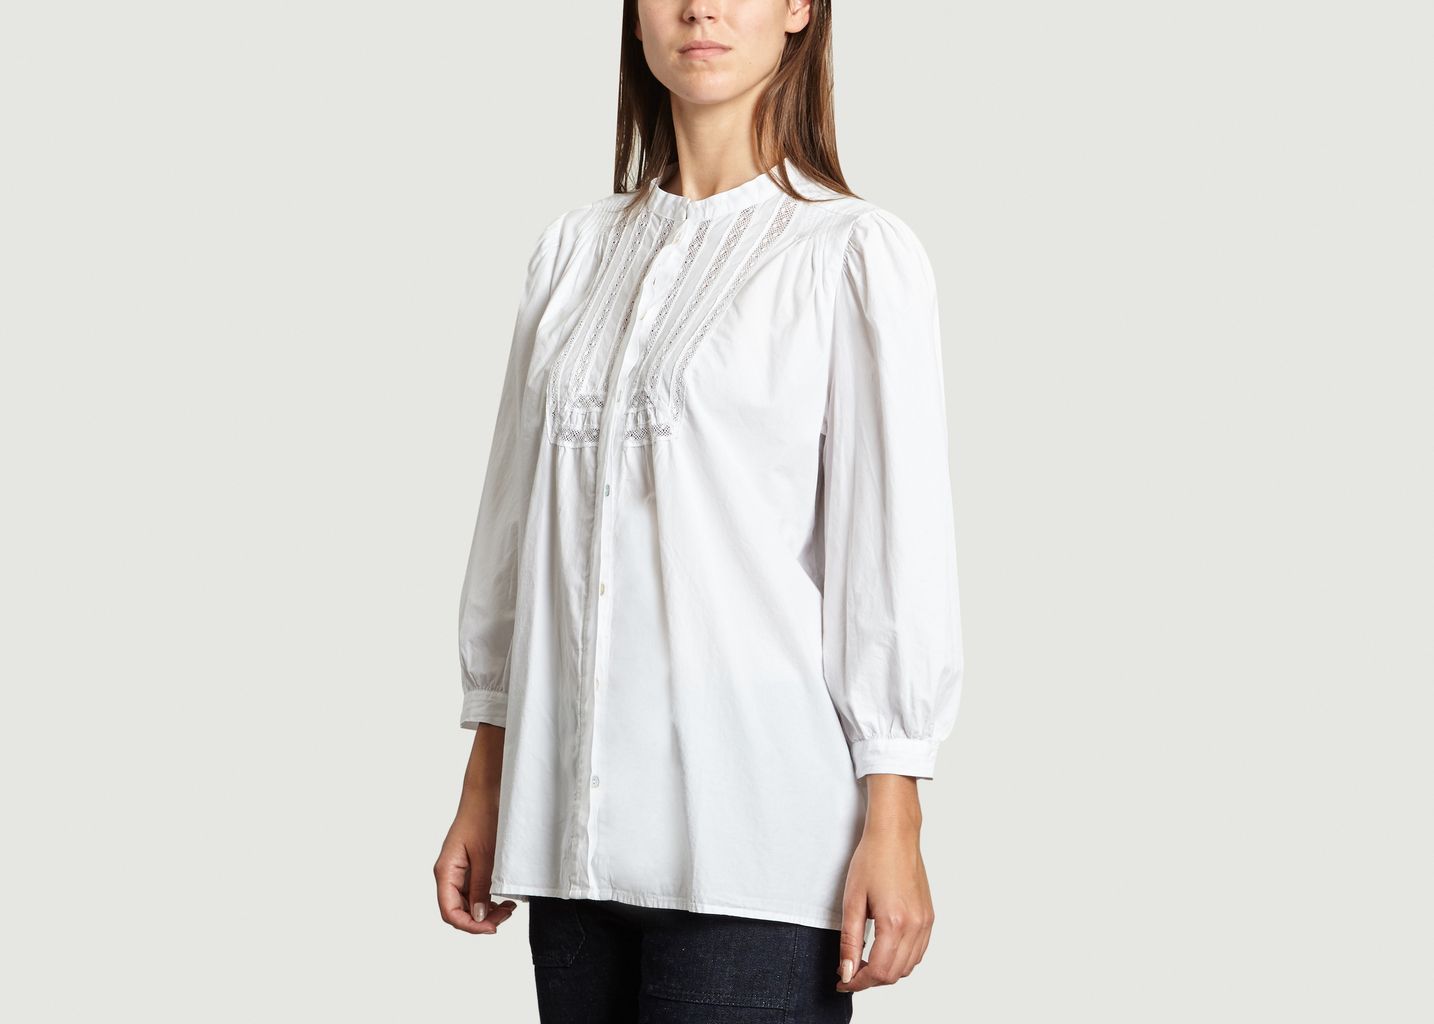 Chloé Shirt - NC.2